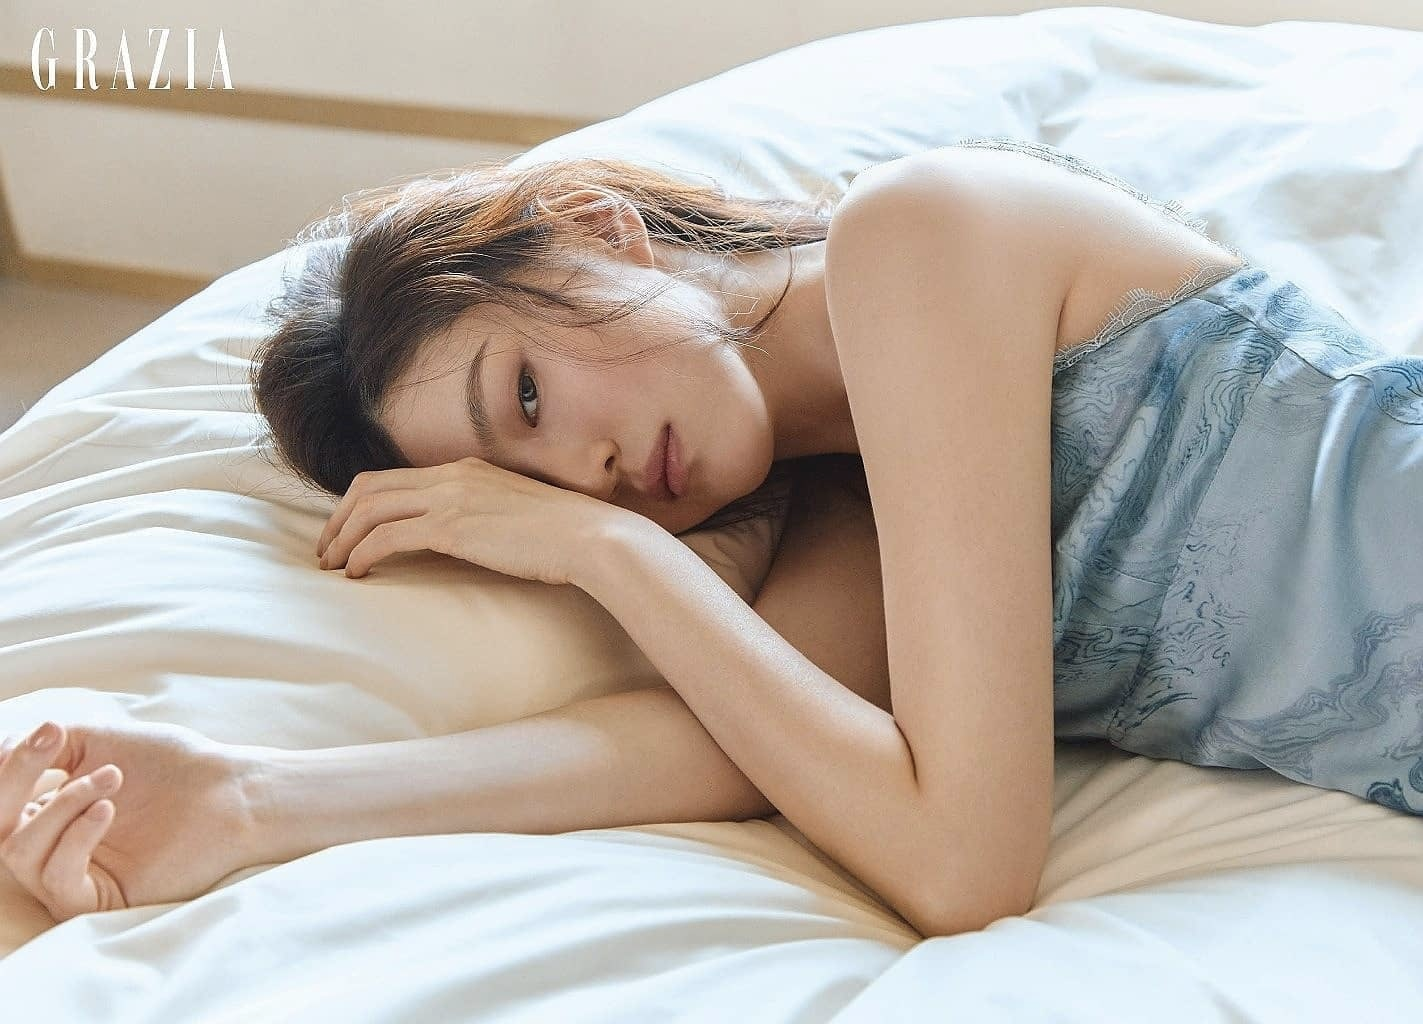 “Tiểu tam” Han So Hee bùng nổ nhan sắc trên bìa tạp chí mới, dân tình mê mệt: Kbiz sao giờ mới phát hiện ra visual này? - Ảnh 2.